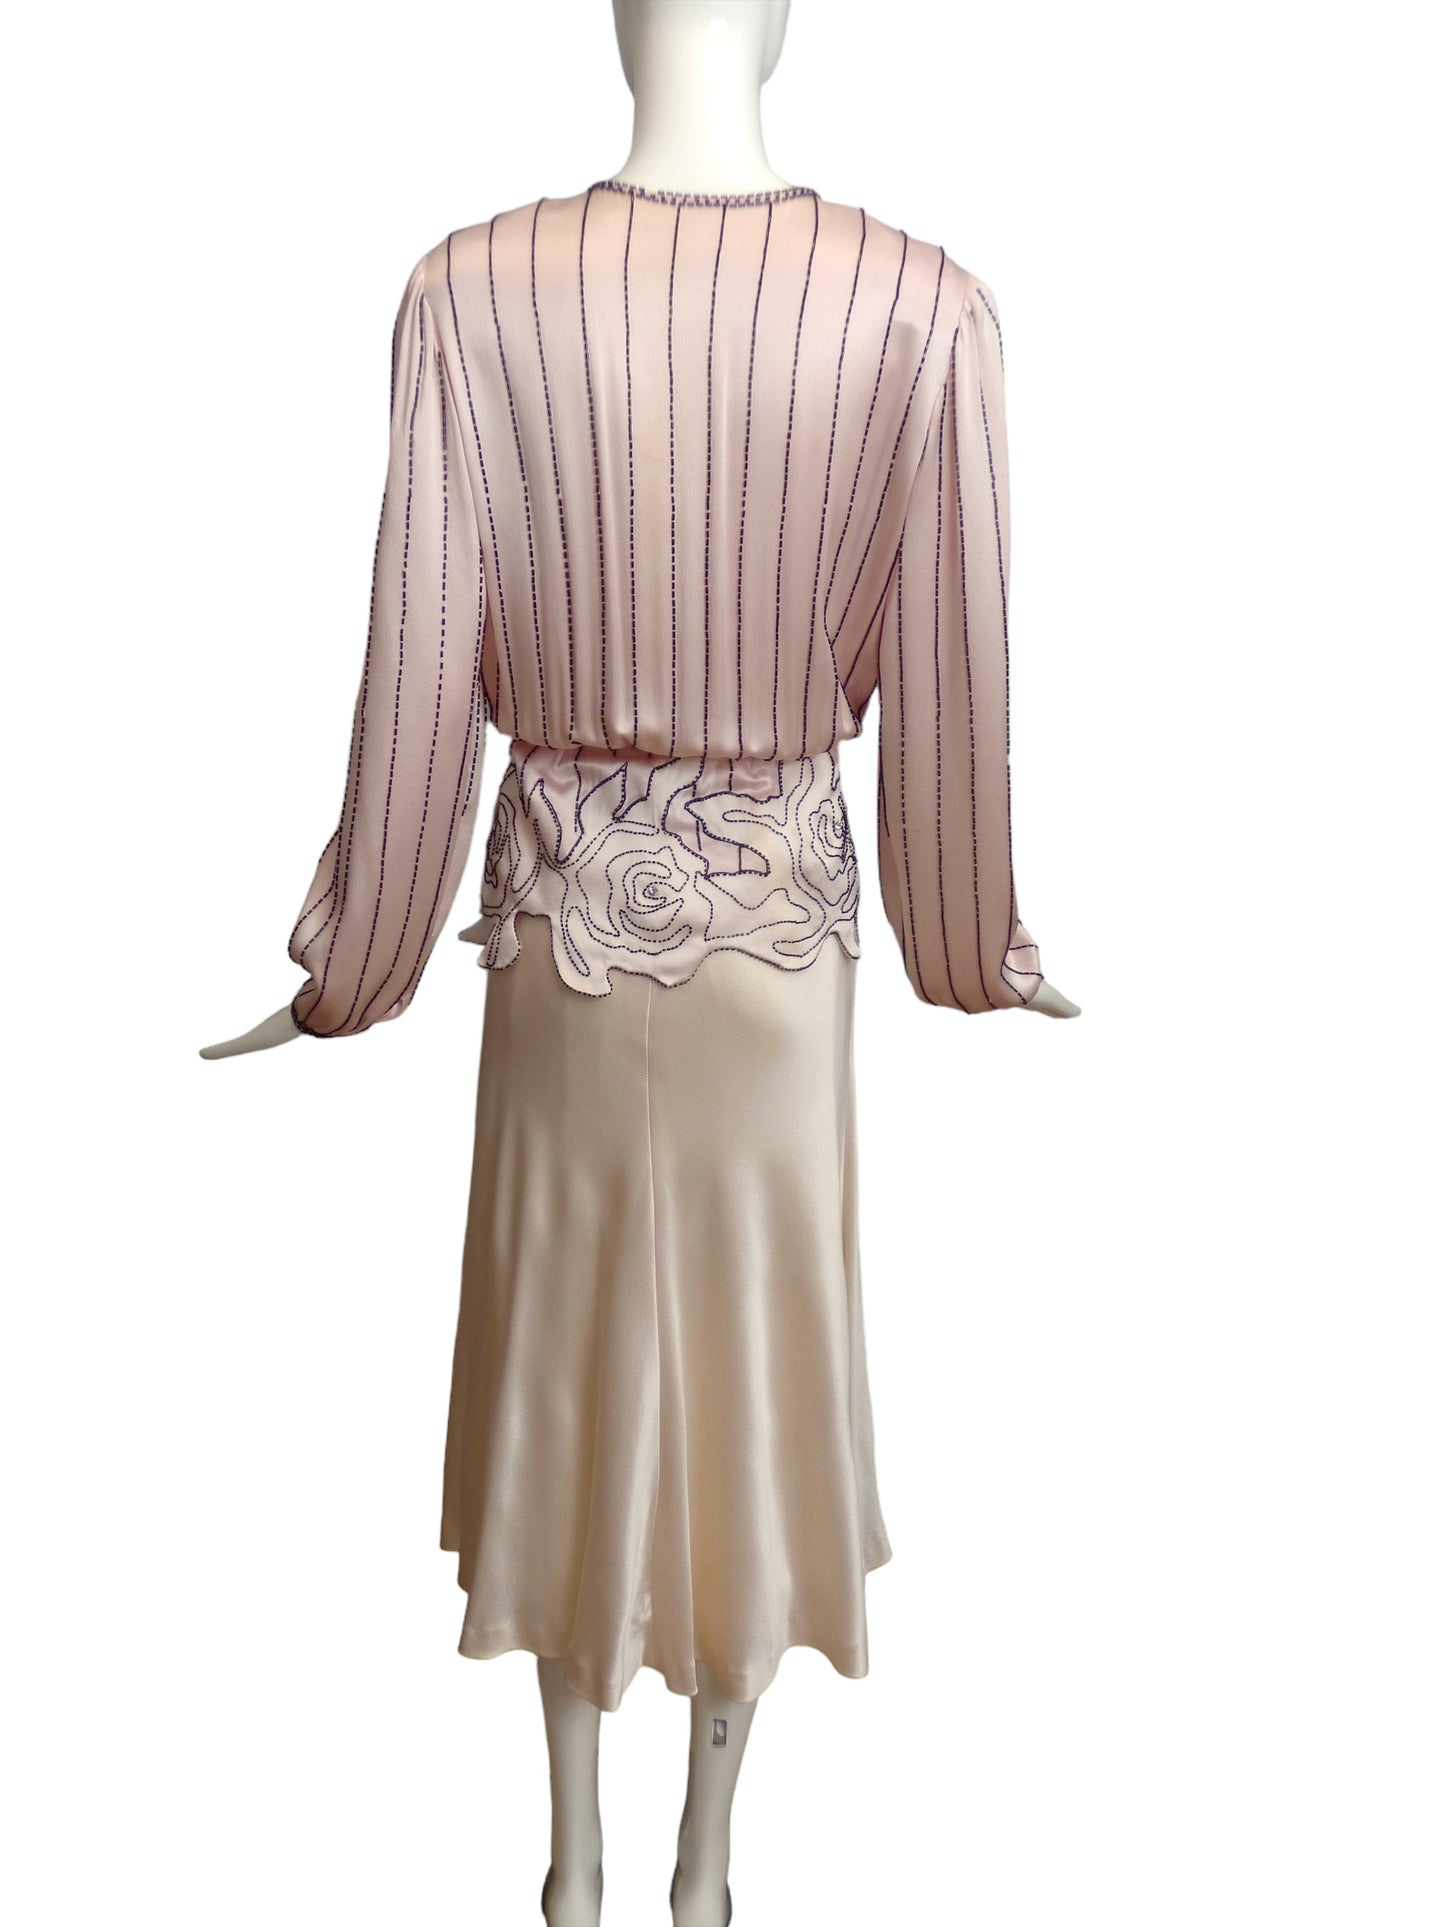 PAUL-LOUIS ORRIER- AS IS 1980s Beaded Evening Dress, Size 6